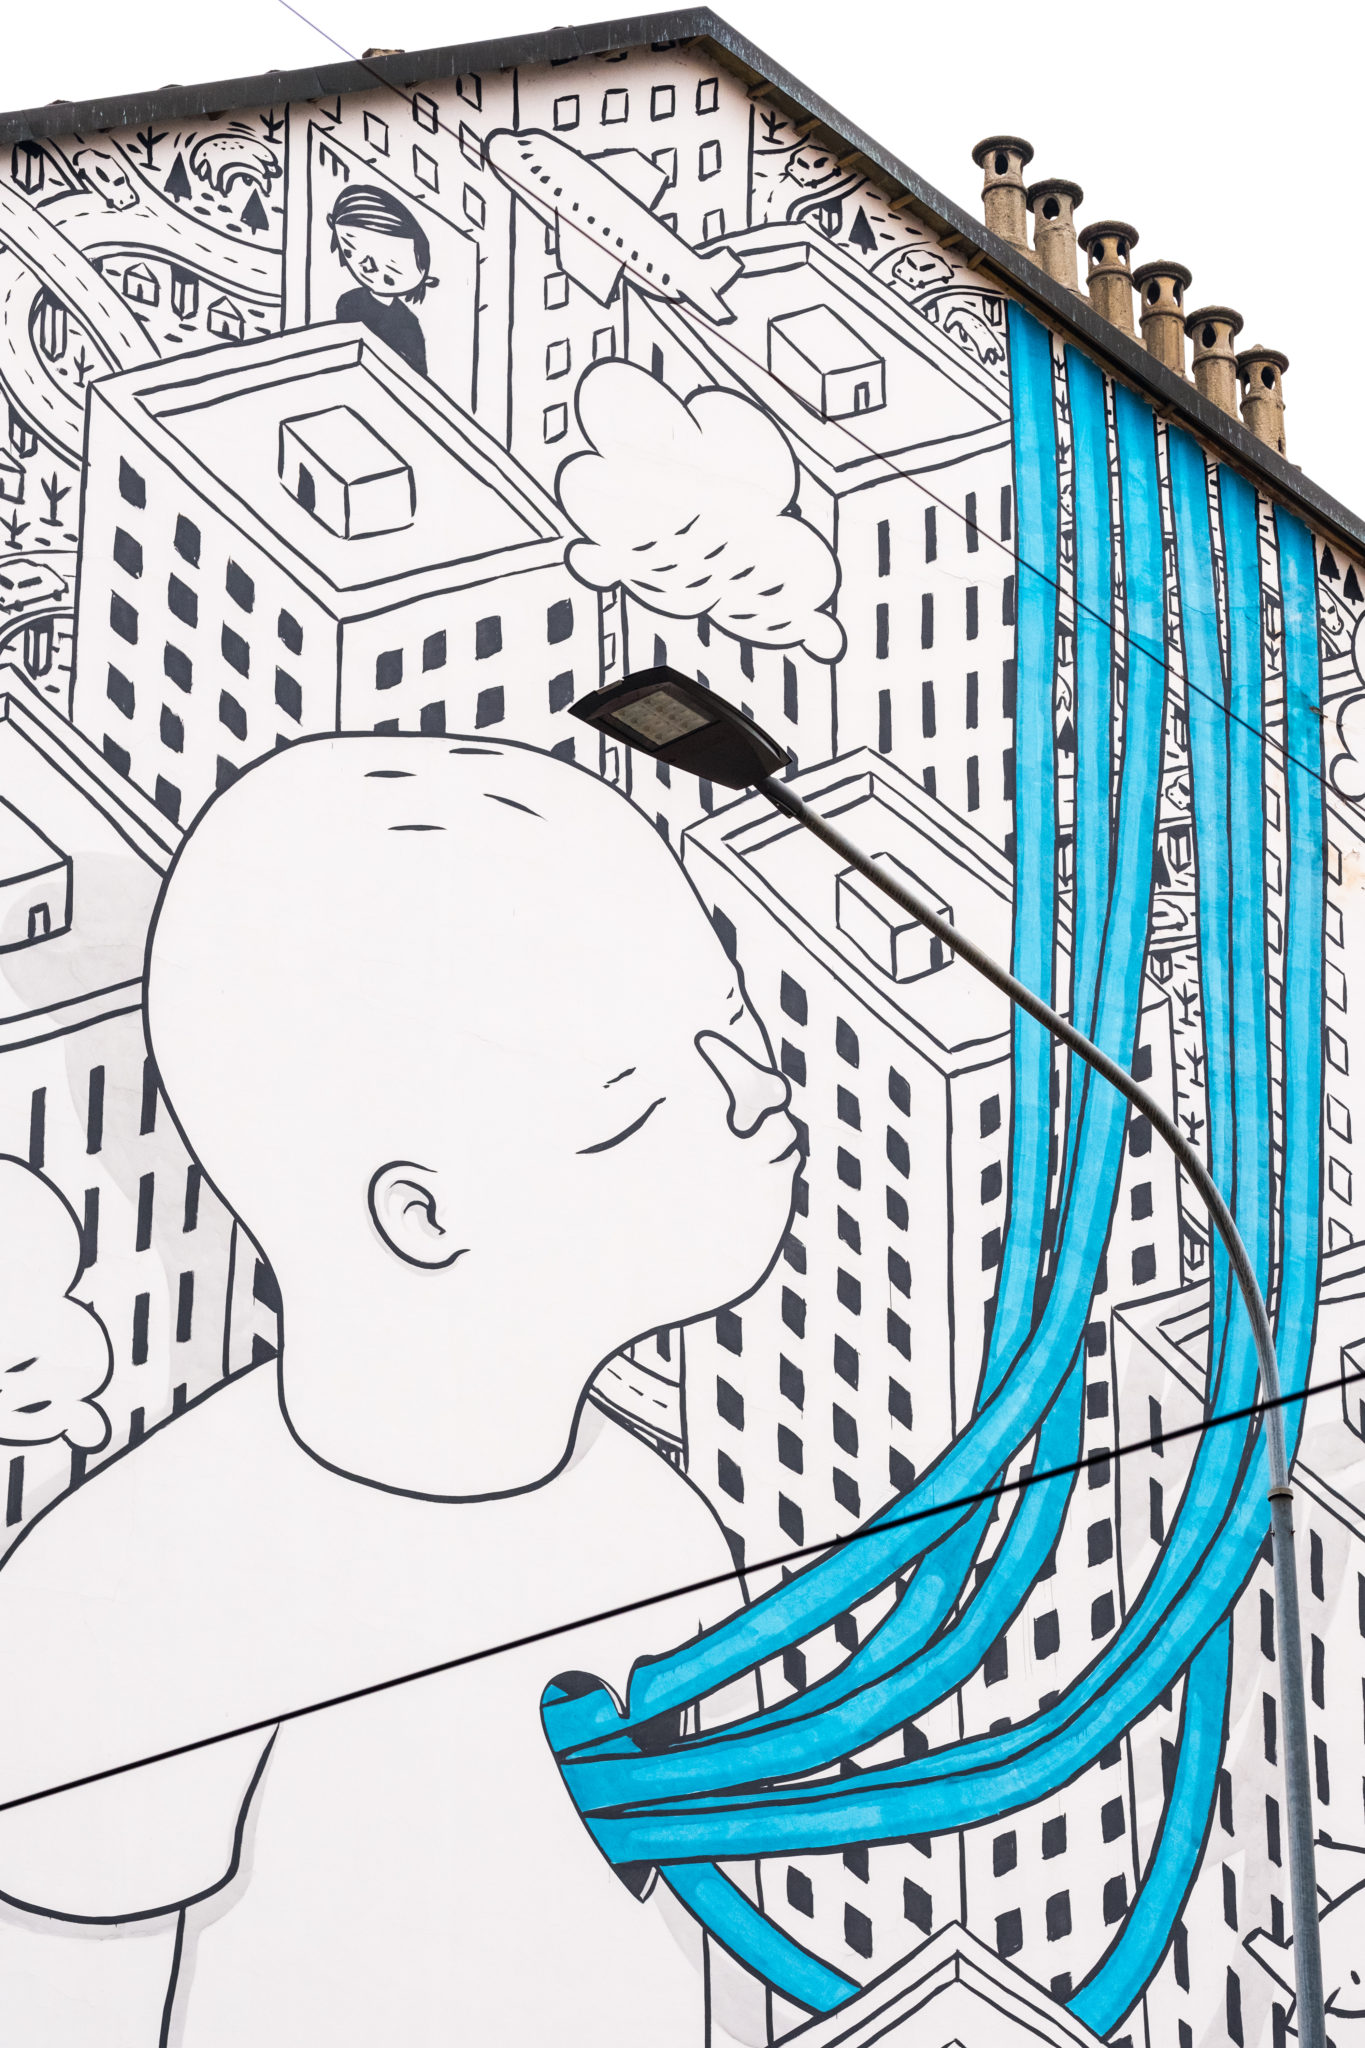 MurArte, progetto di street e urban art che fa rivivere i muri di Torino, compirà fra qualche mese 20 anni. Ecco un itinerario della città ridisegnata